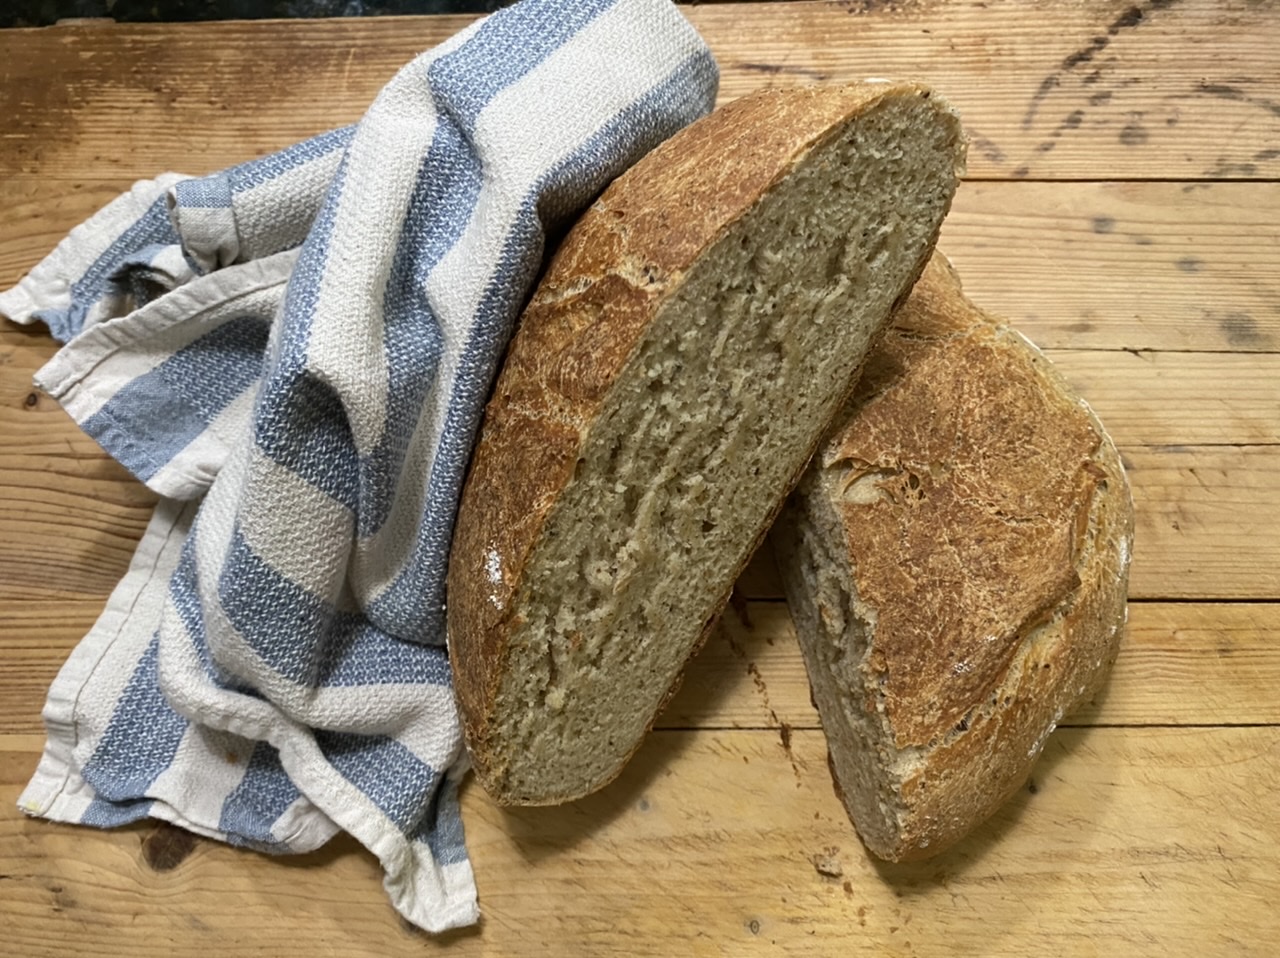 D1D3D546 D0F7 4781 93DD 1F2AEC478BF1 - How to Make the Best Rustic Dutch Oven Crispy Bread